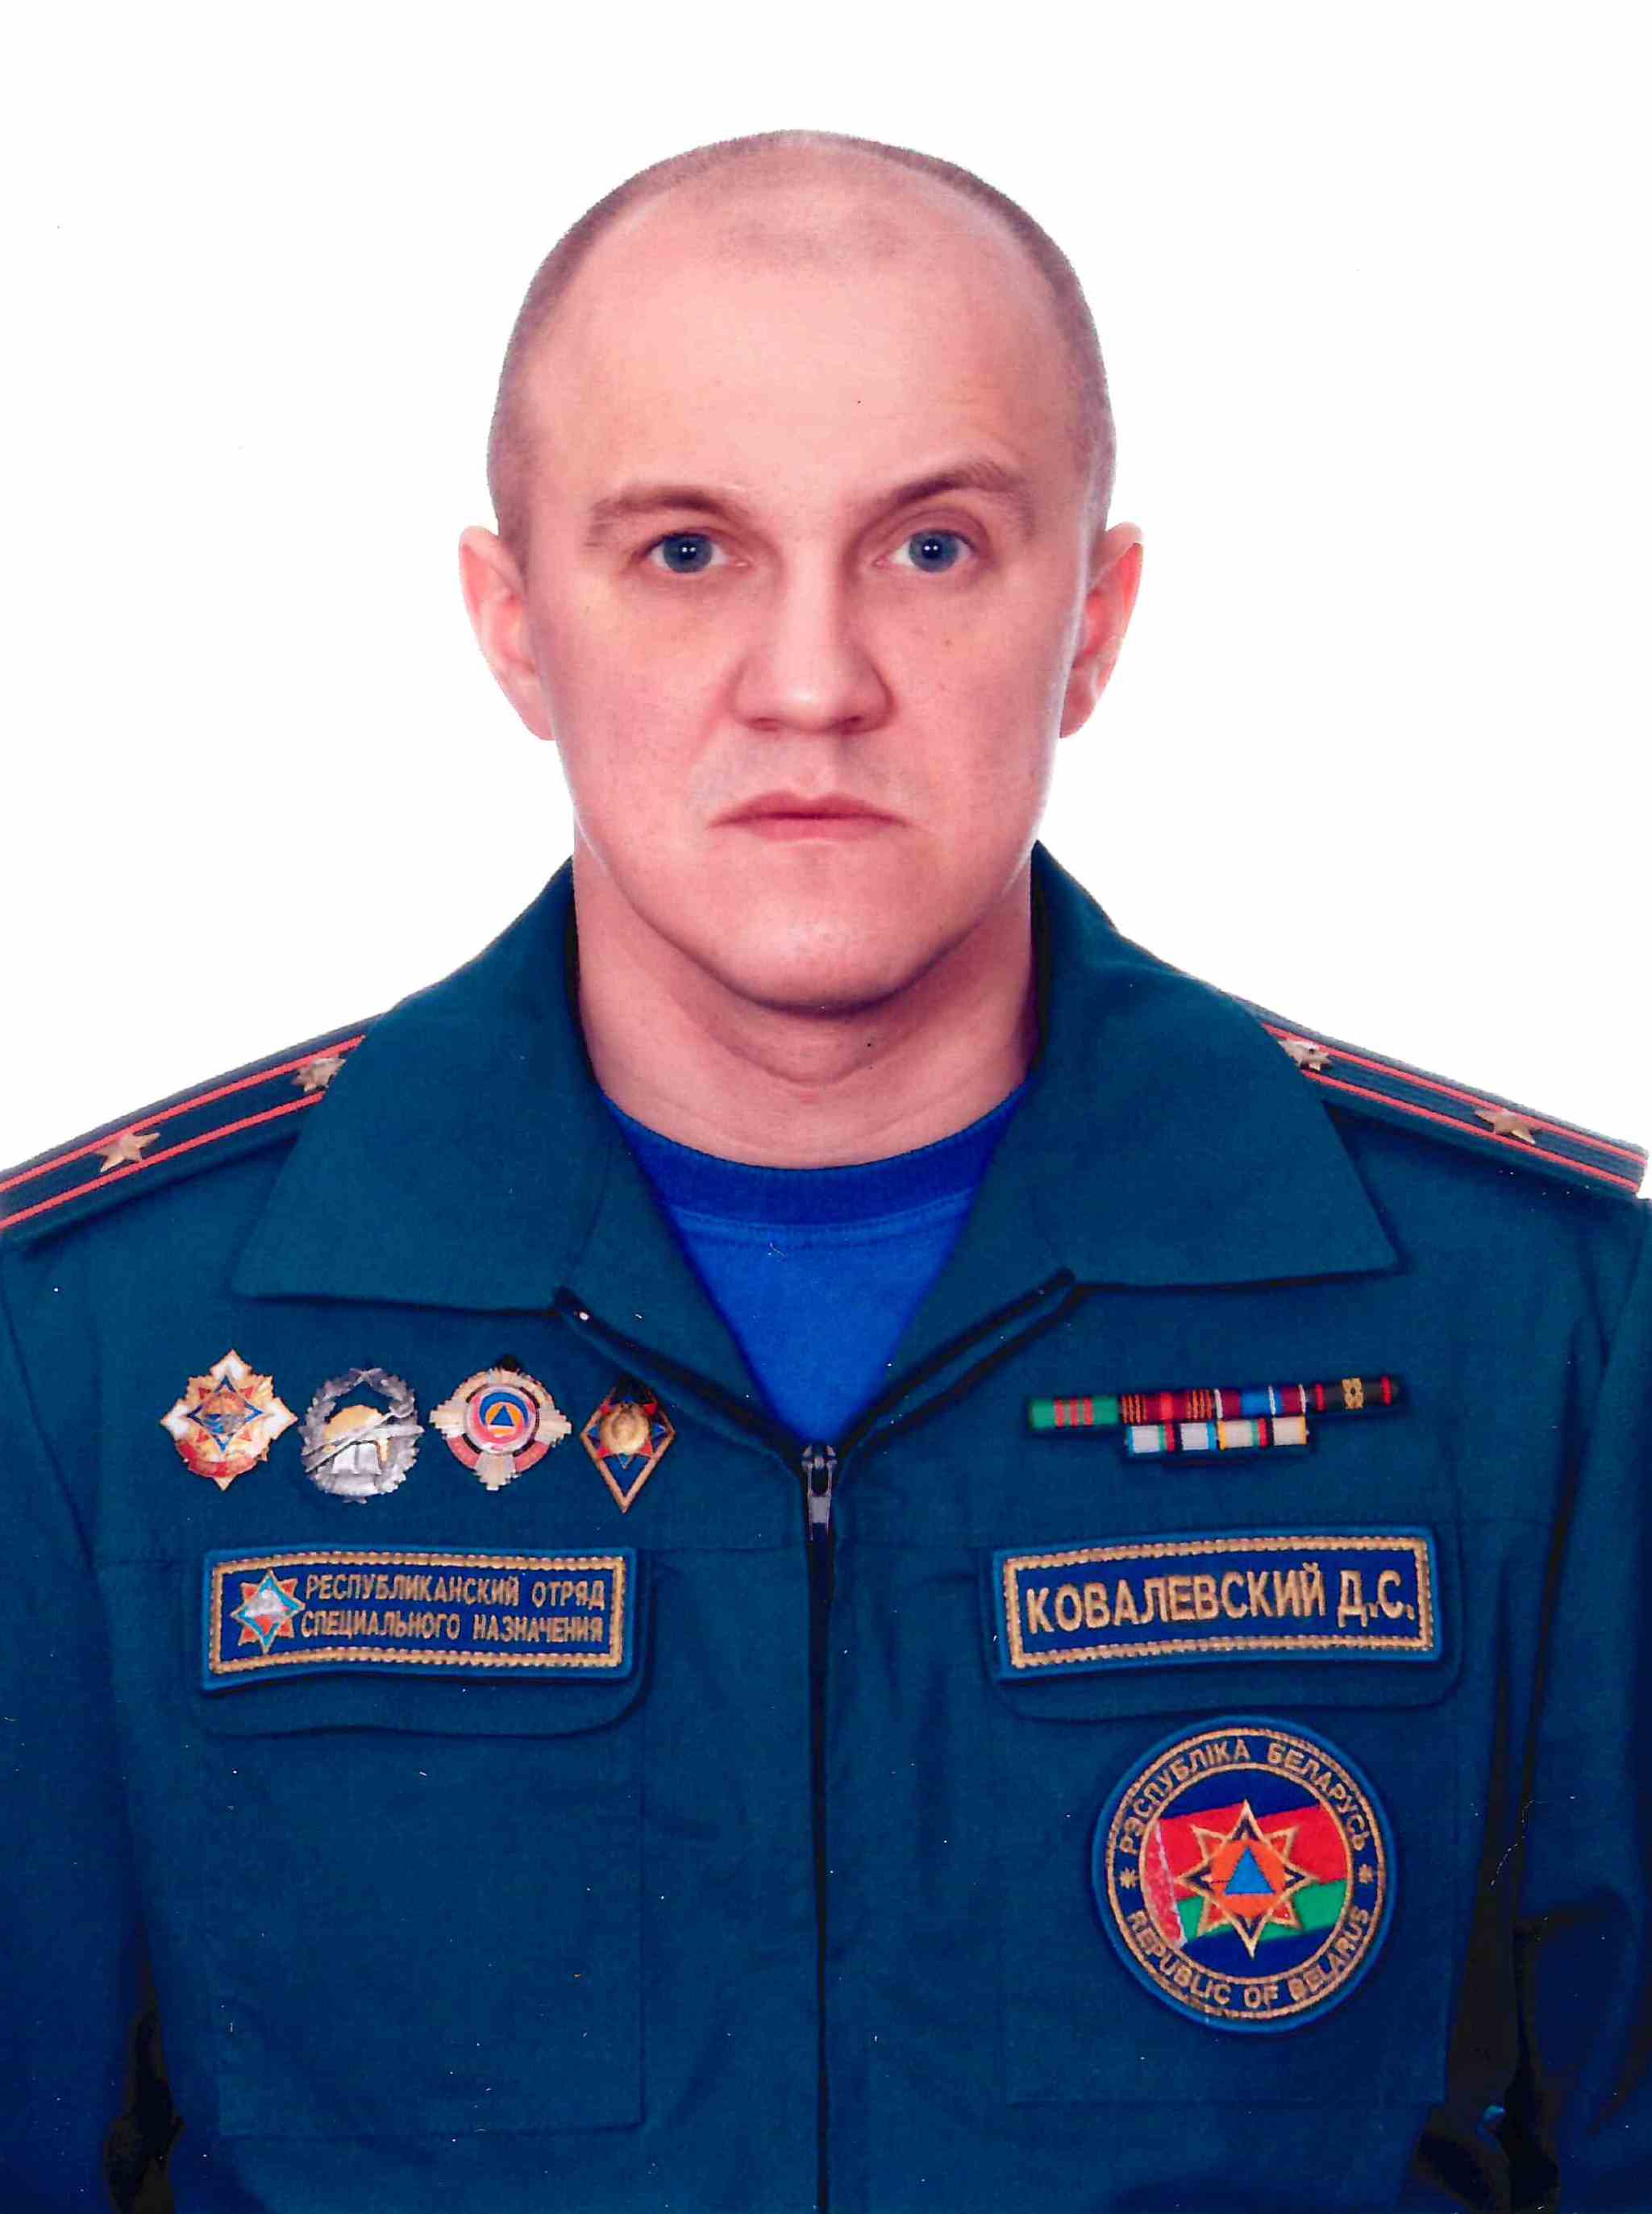 Ковалевский Дмитрий Станиславович